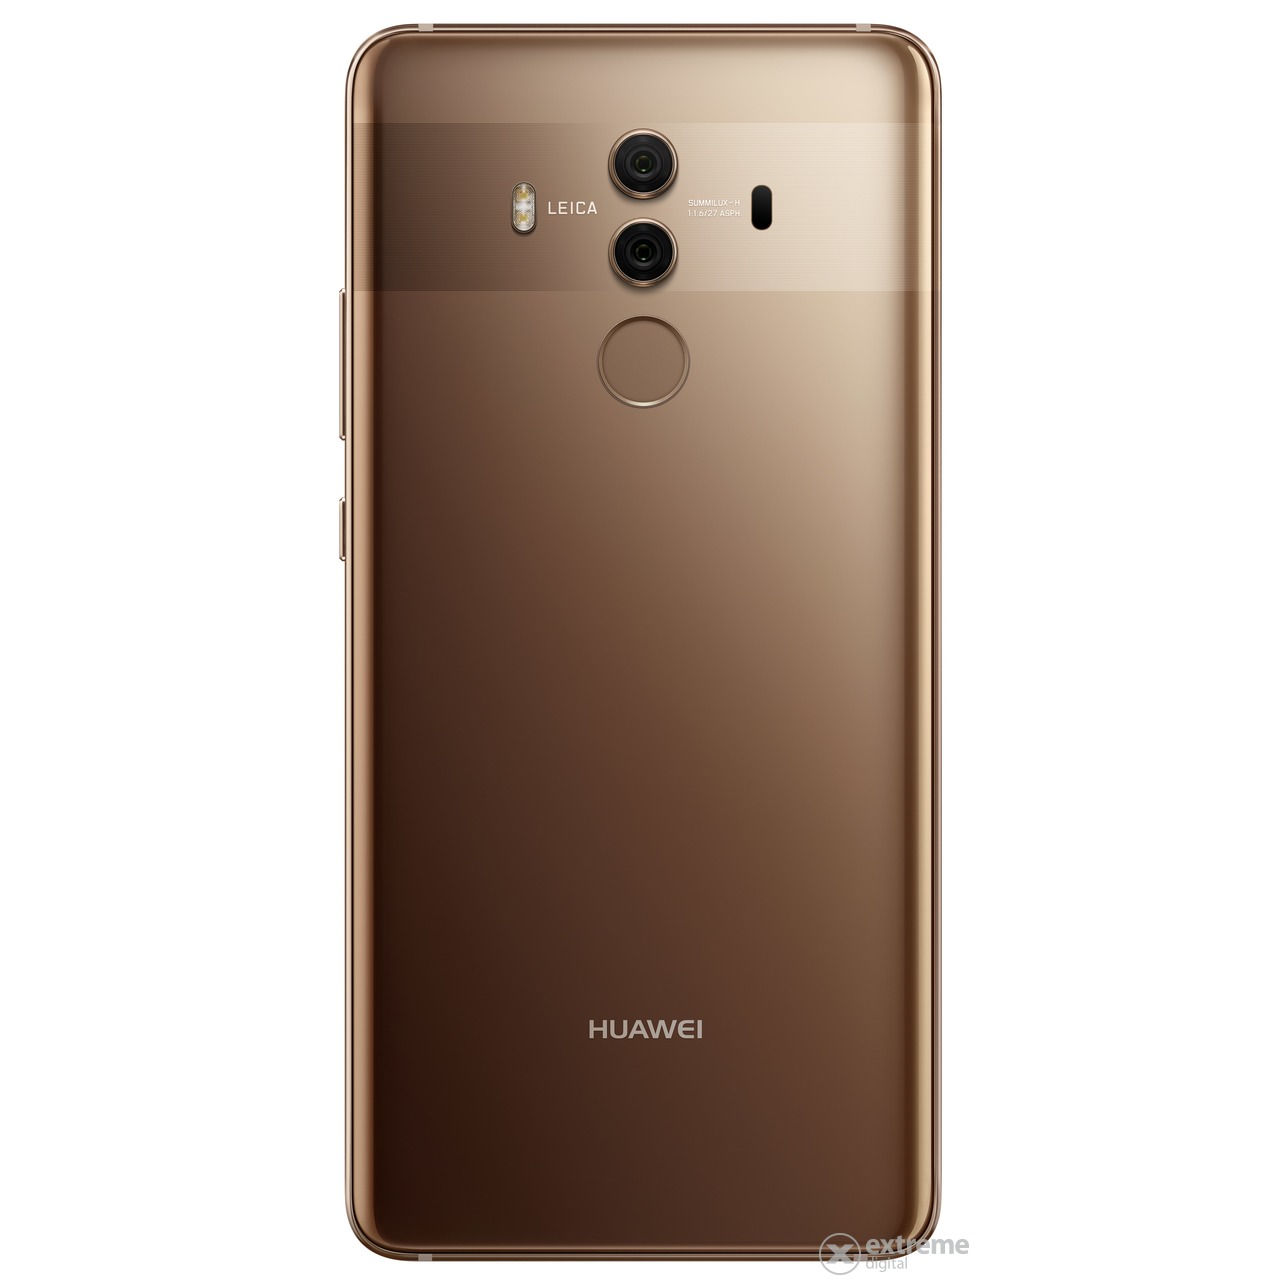 Megérkezett hazánkba: Huawei Mate 10 Pro